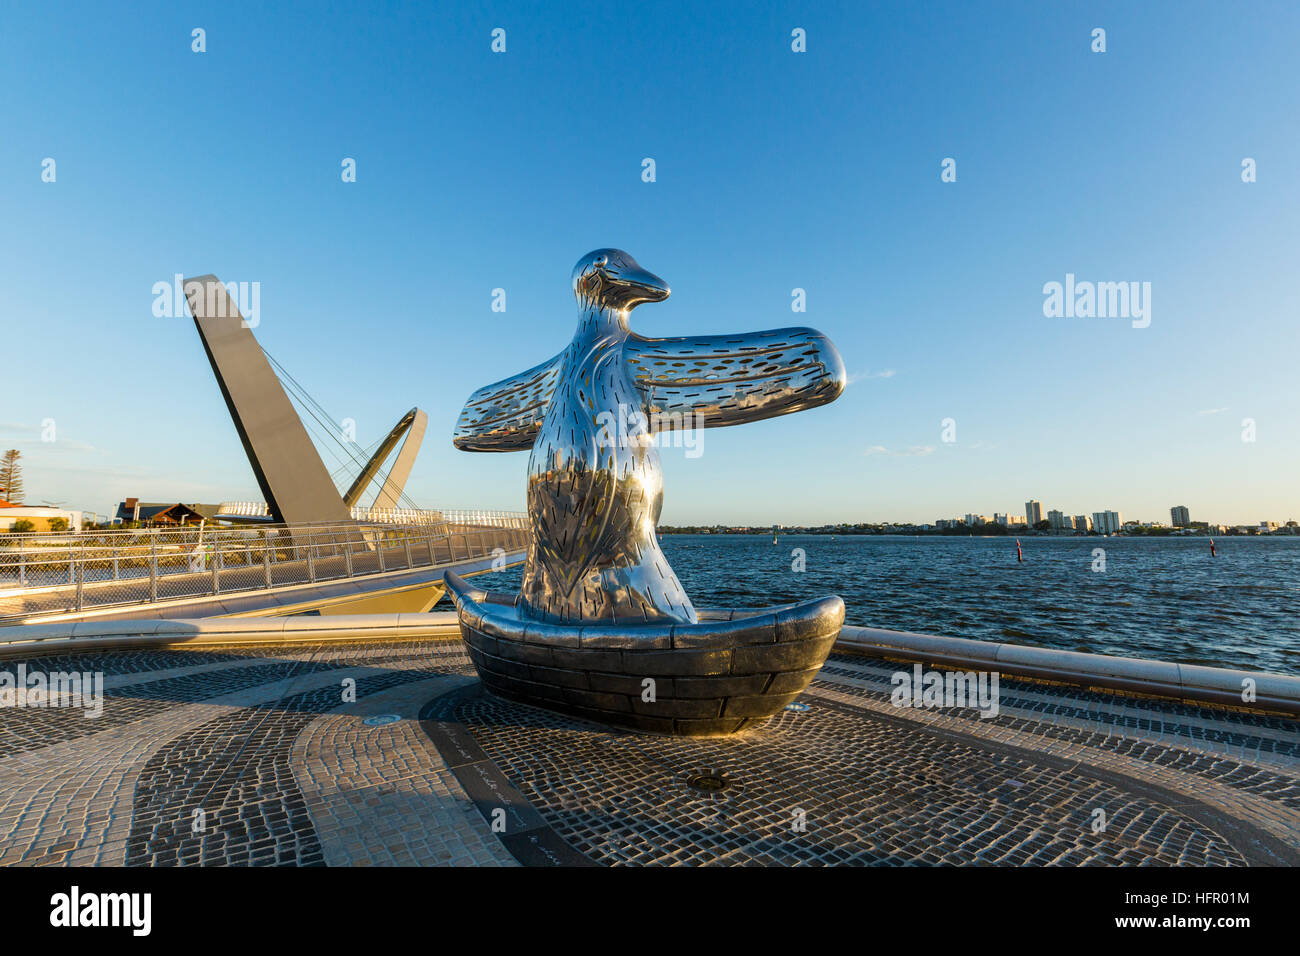 Der Erstkontakt-Skulptur am Swan River mit Elizabeth Quay Brücke über.  Perth, Western Australia, Australien Stockfoto